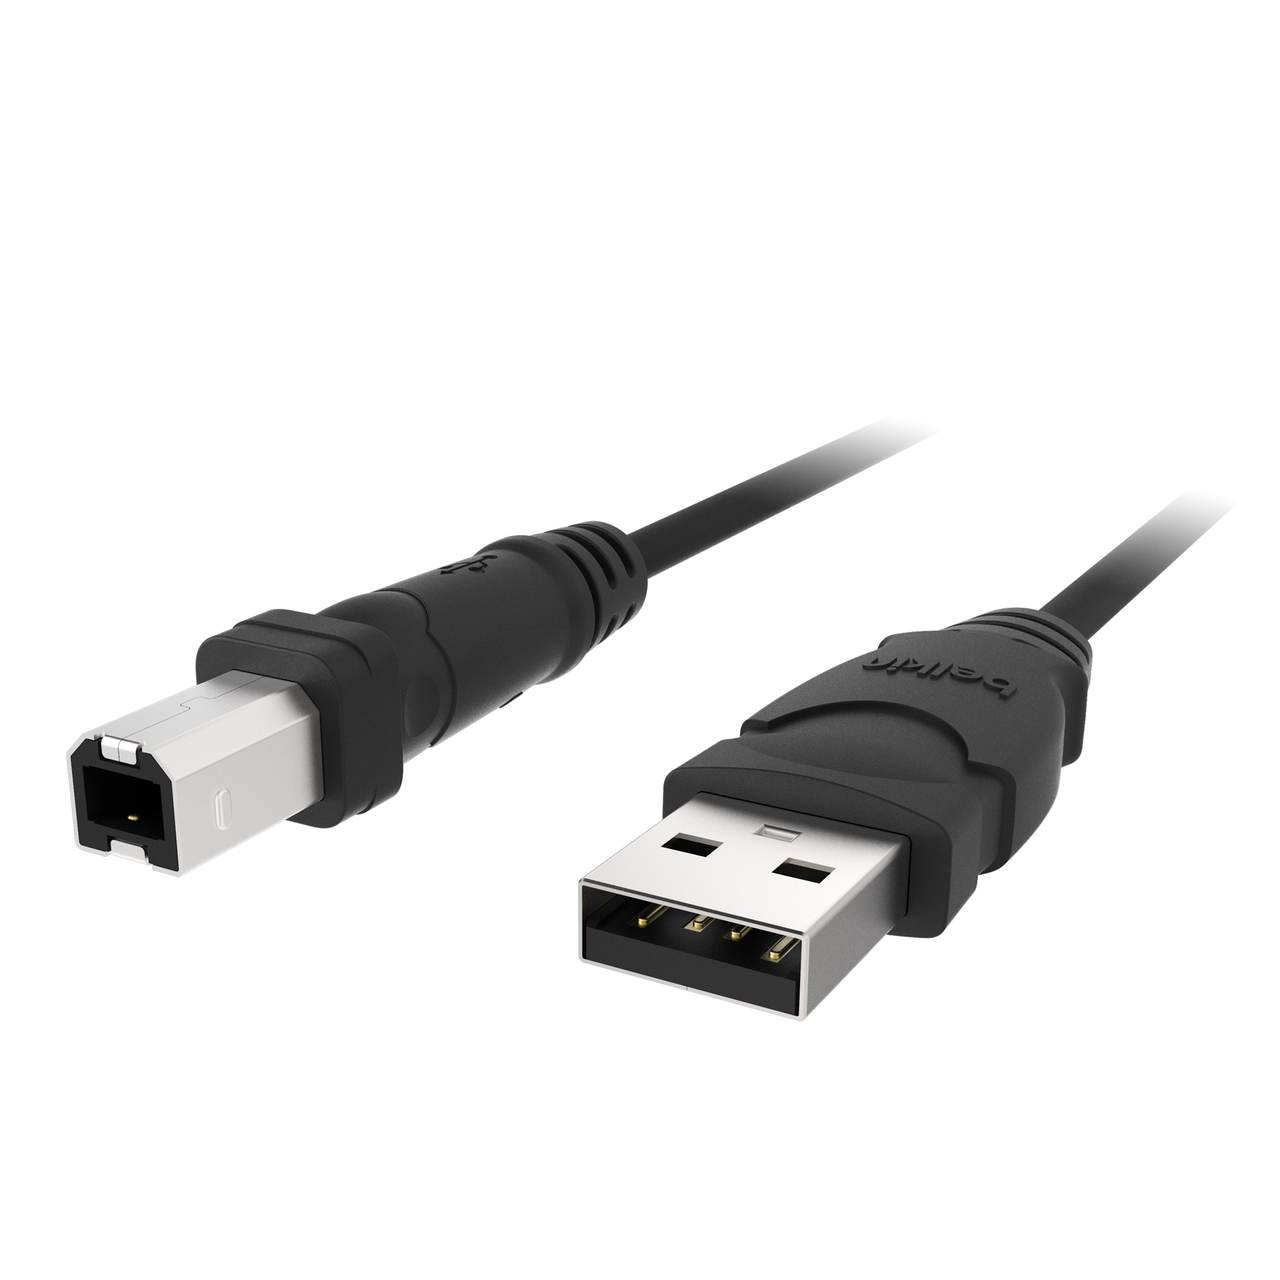 Slordig Uitdrukkelijk Luiheid 2.0 USB-A to USB-B Cable - 3ft | Belkin | Belkin: US